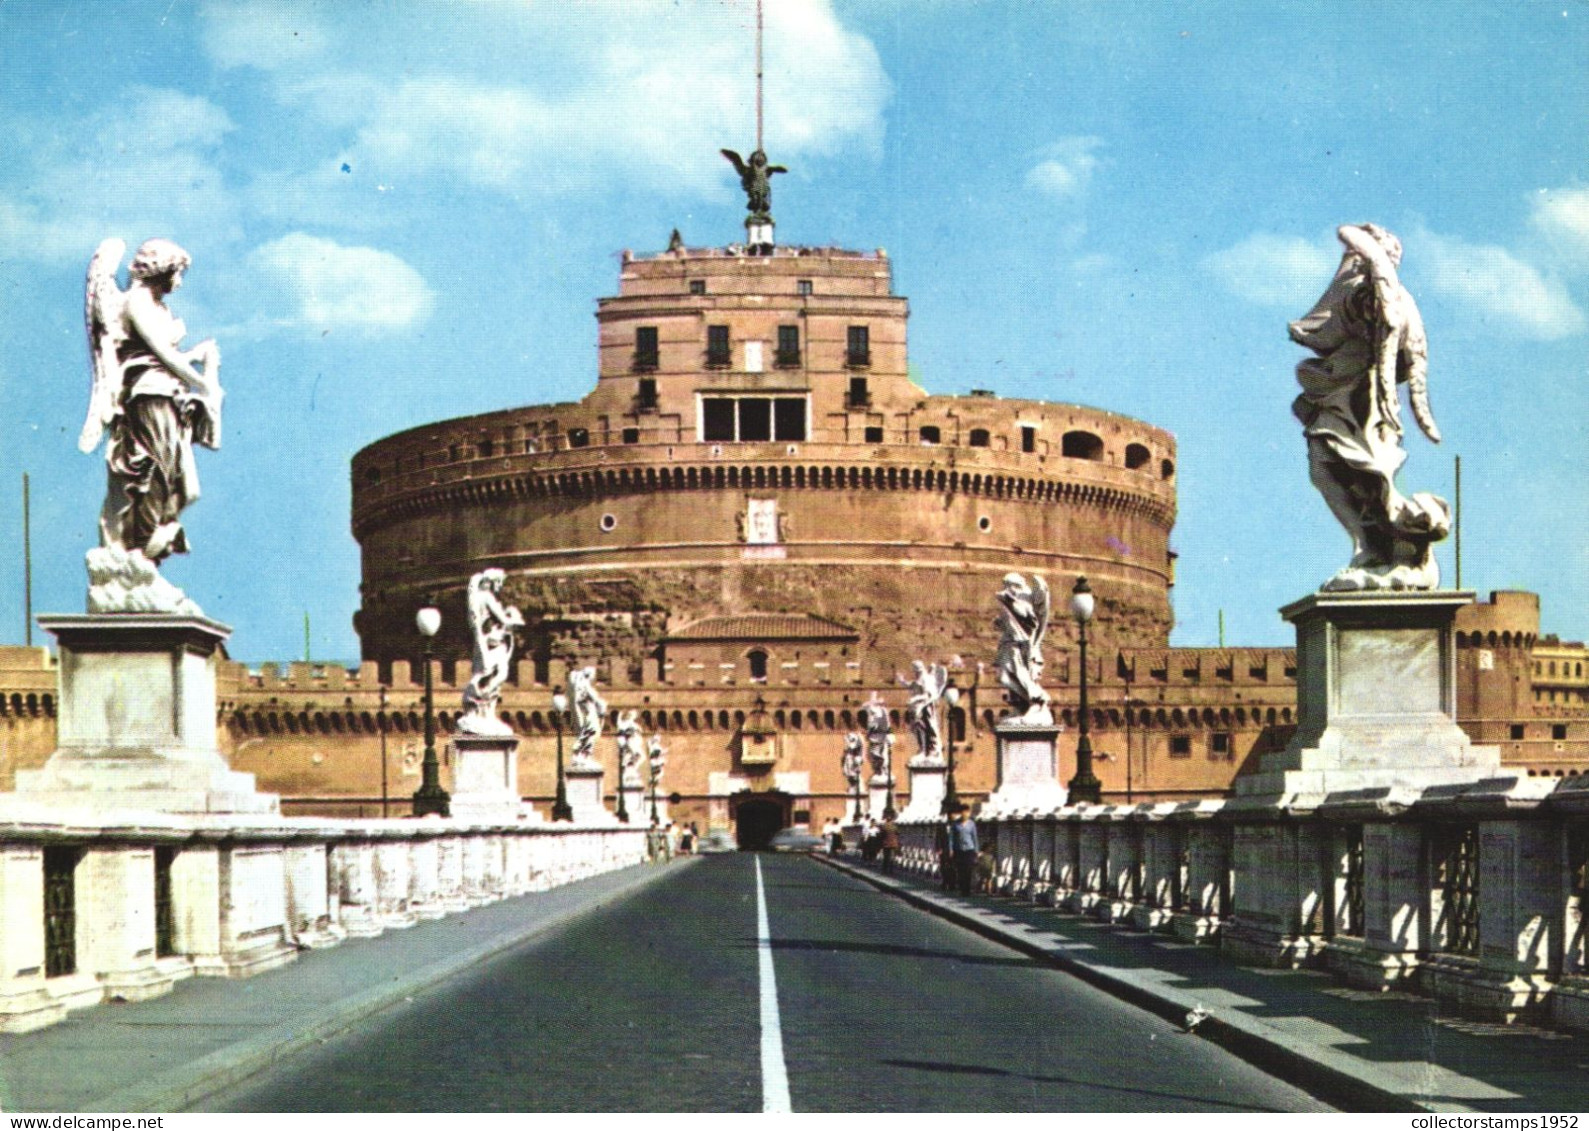 ROME, SAINT ANGELO BRIDGE, CASTLE, ARCHITECTURE, STATUE, ITALY - Ponts